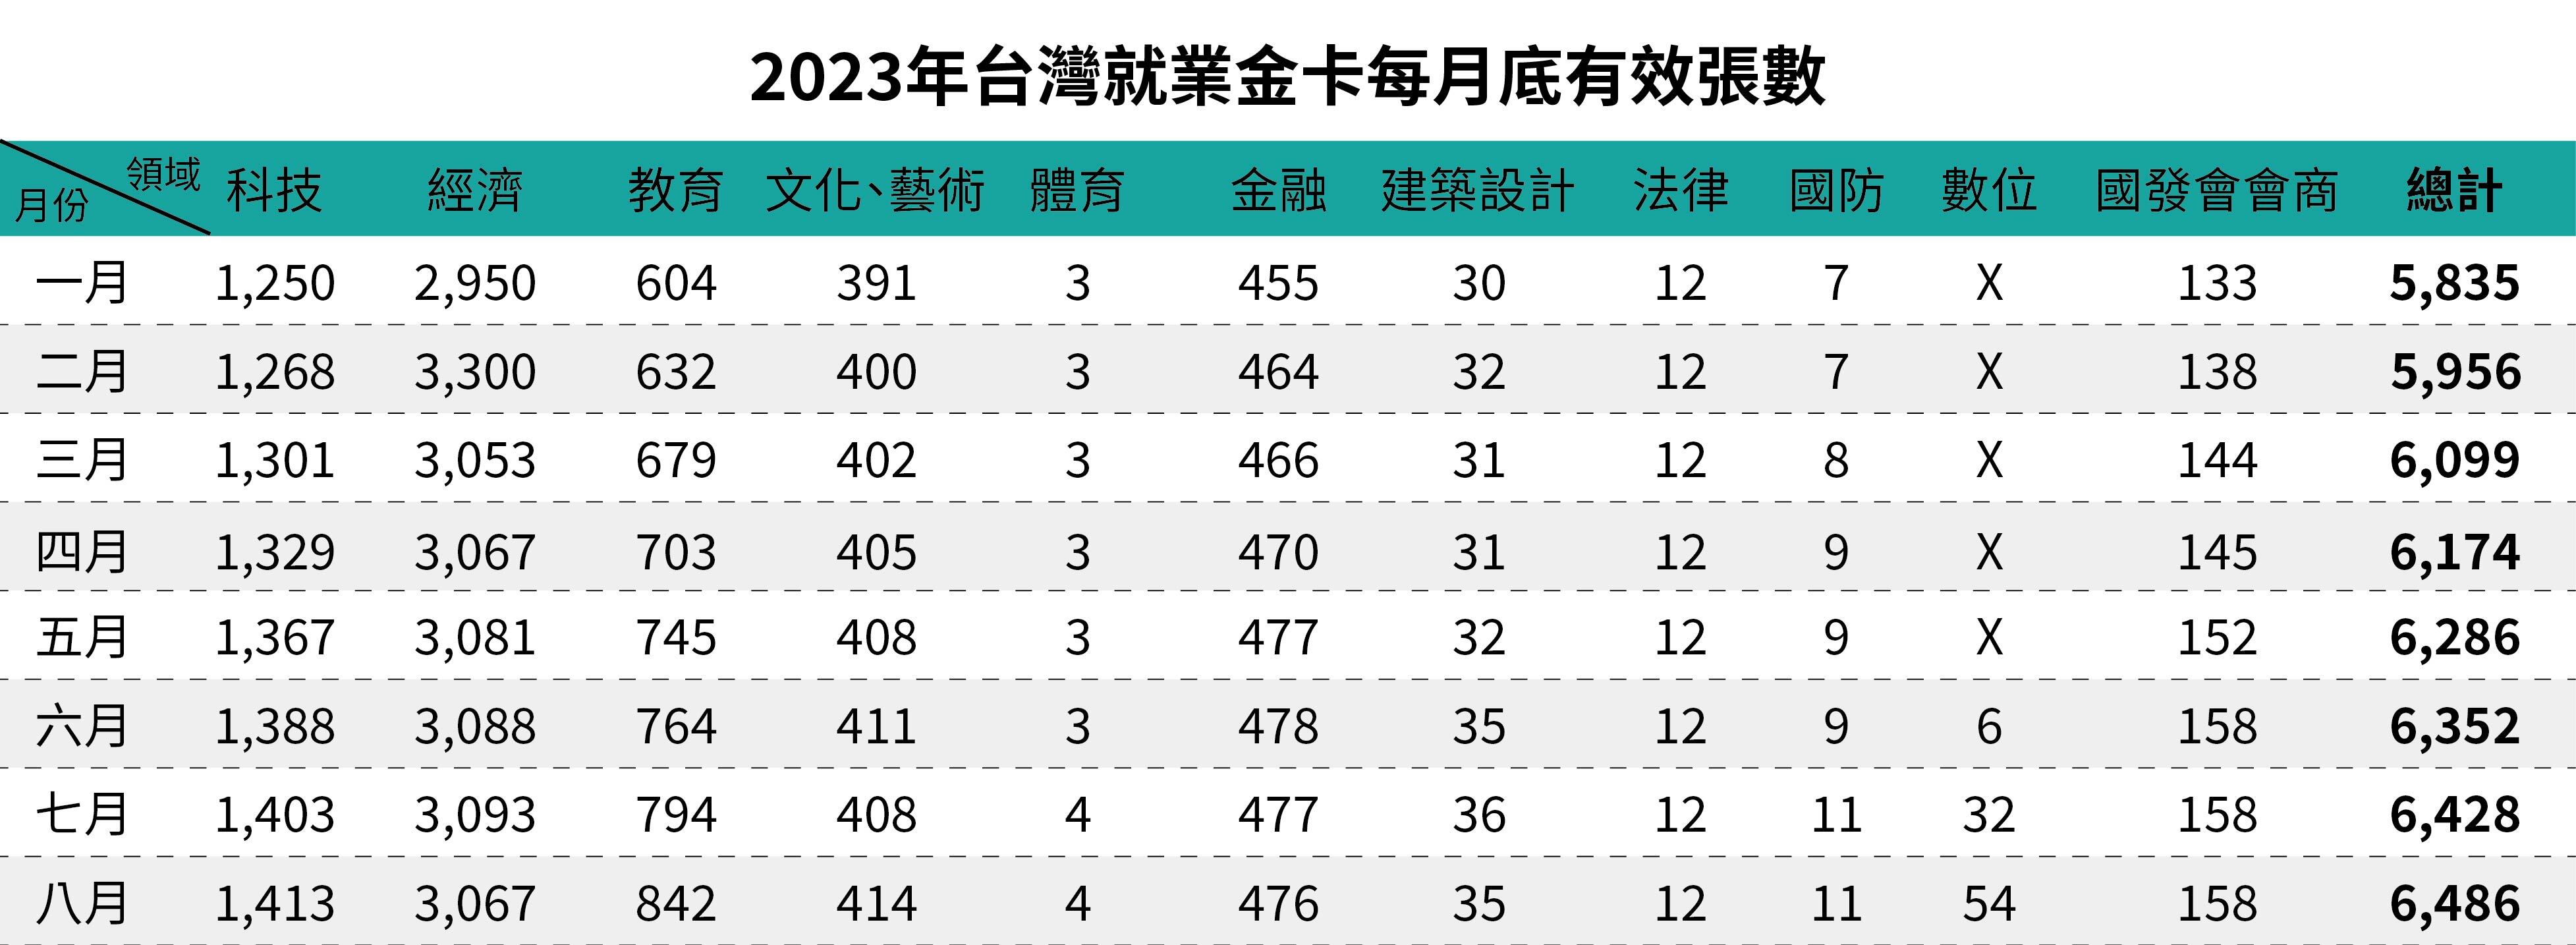 2023年台灣就業金卡每月底有效張數-八月